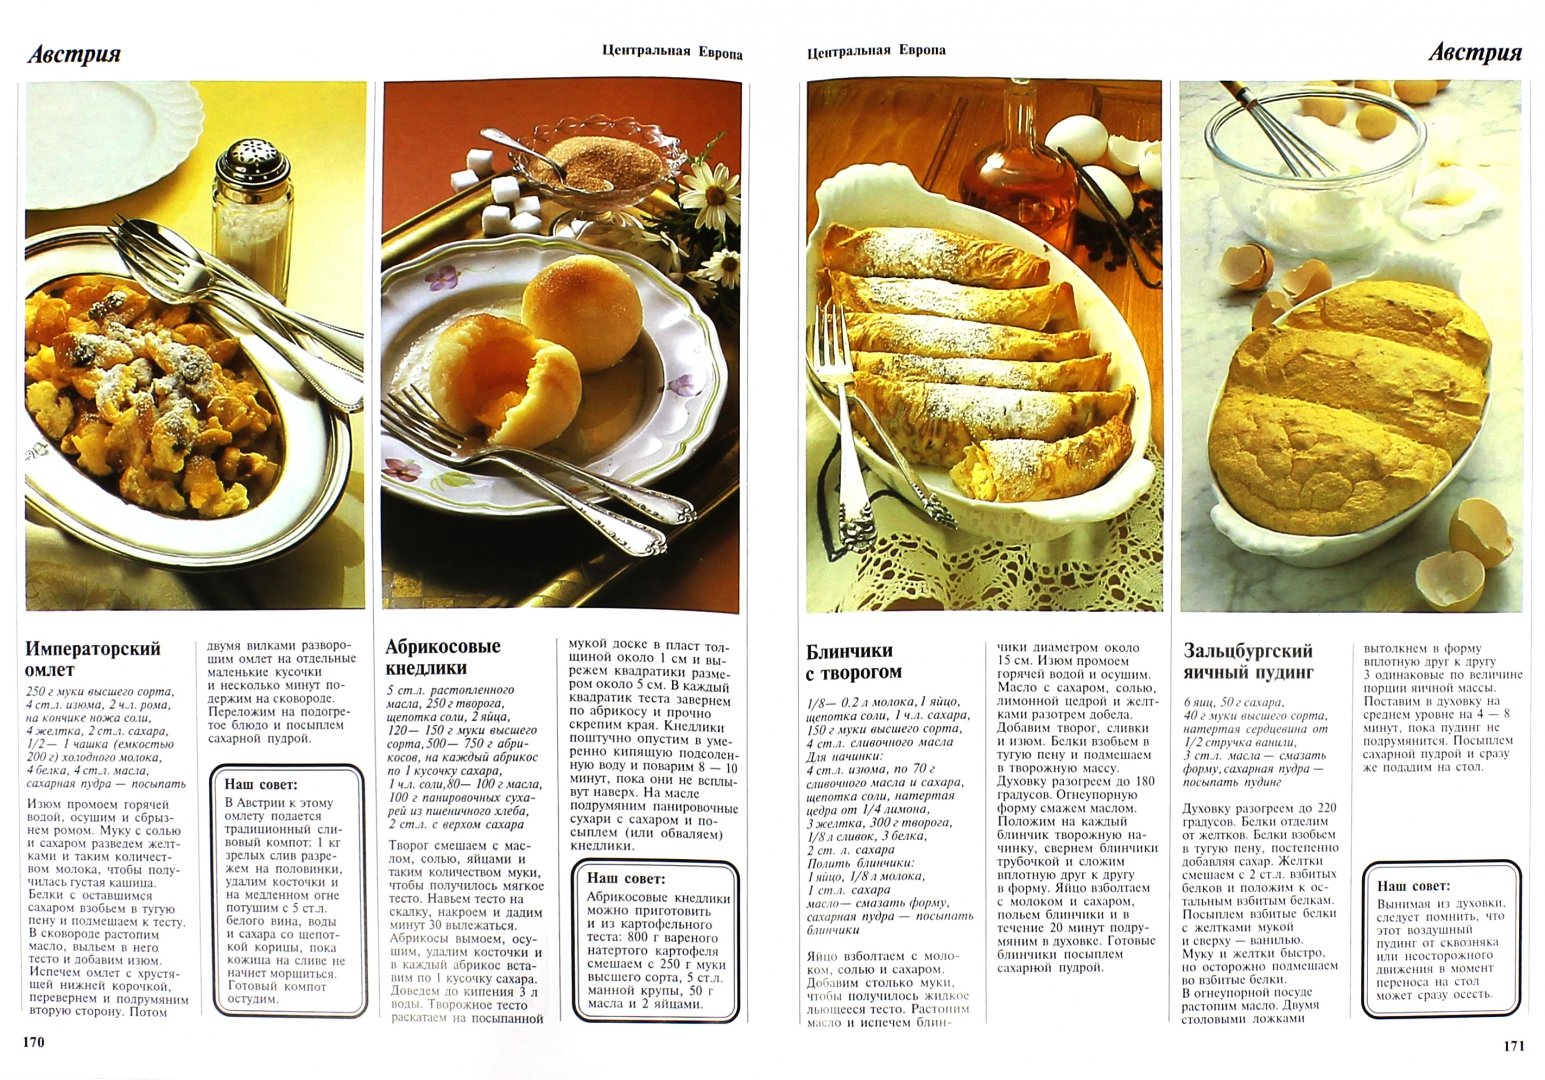 Иллюстрация 2 из 7 для Мировая кухня - Тойбнер, Вольтер, Хофман | Лабиринт - книги. Источник: Лабиринт